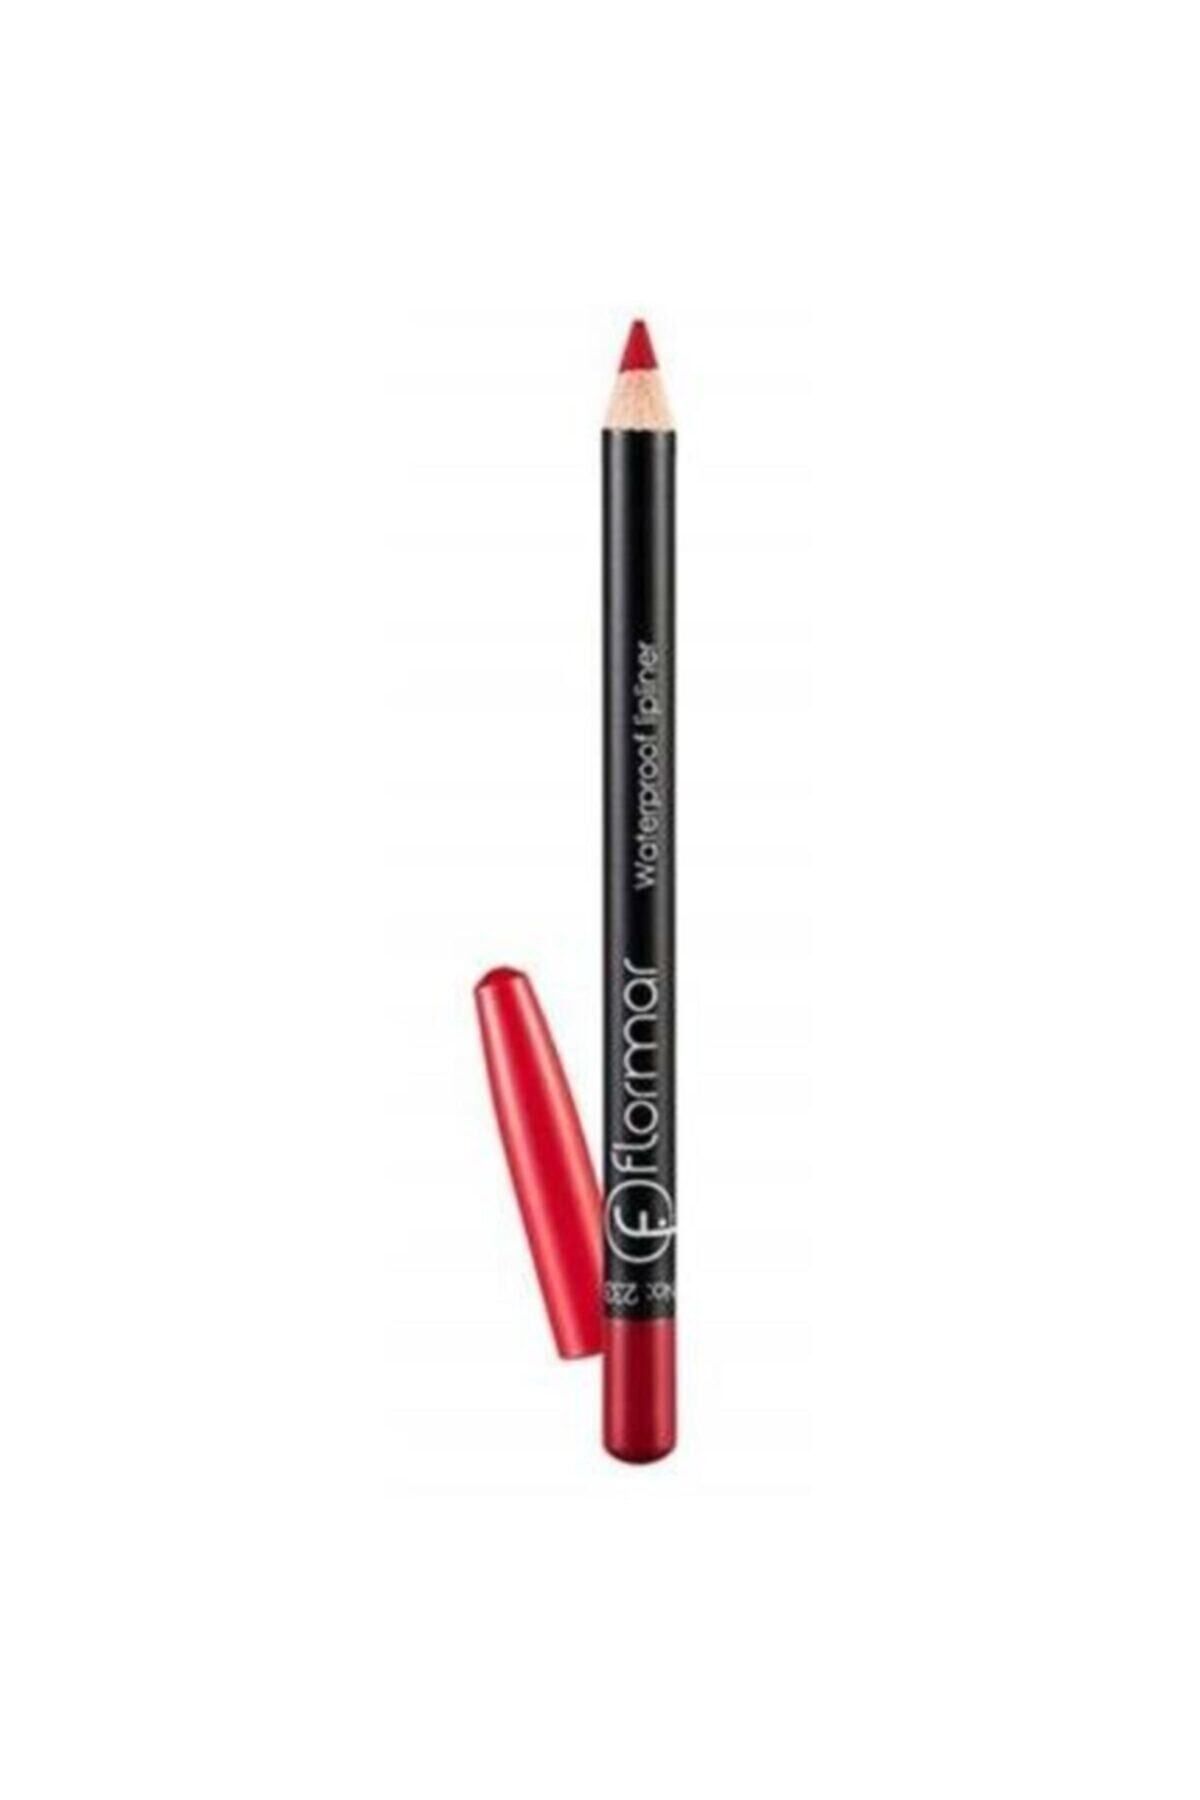 Flormar Water-Resistant Red Lip Pencil Waterproof No:107